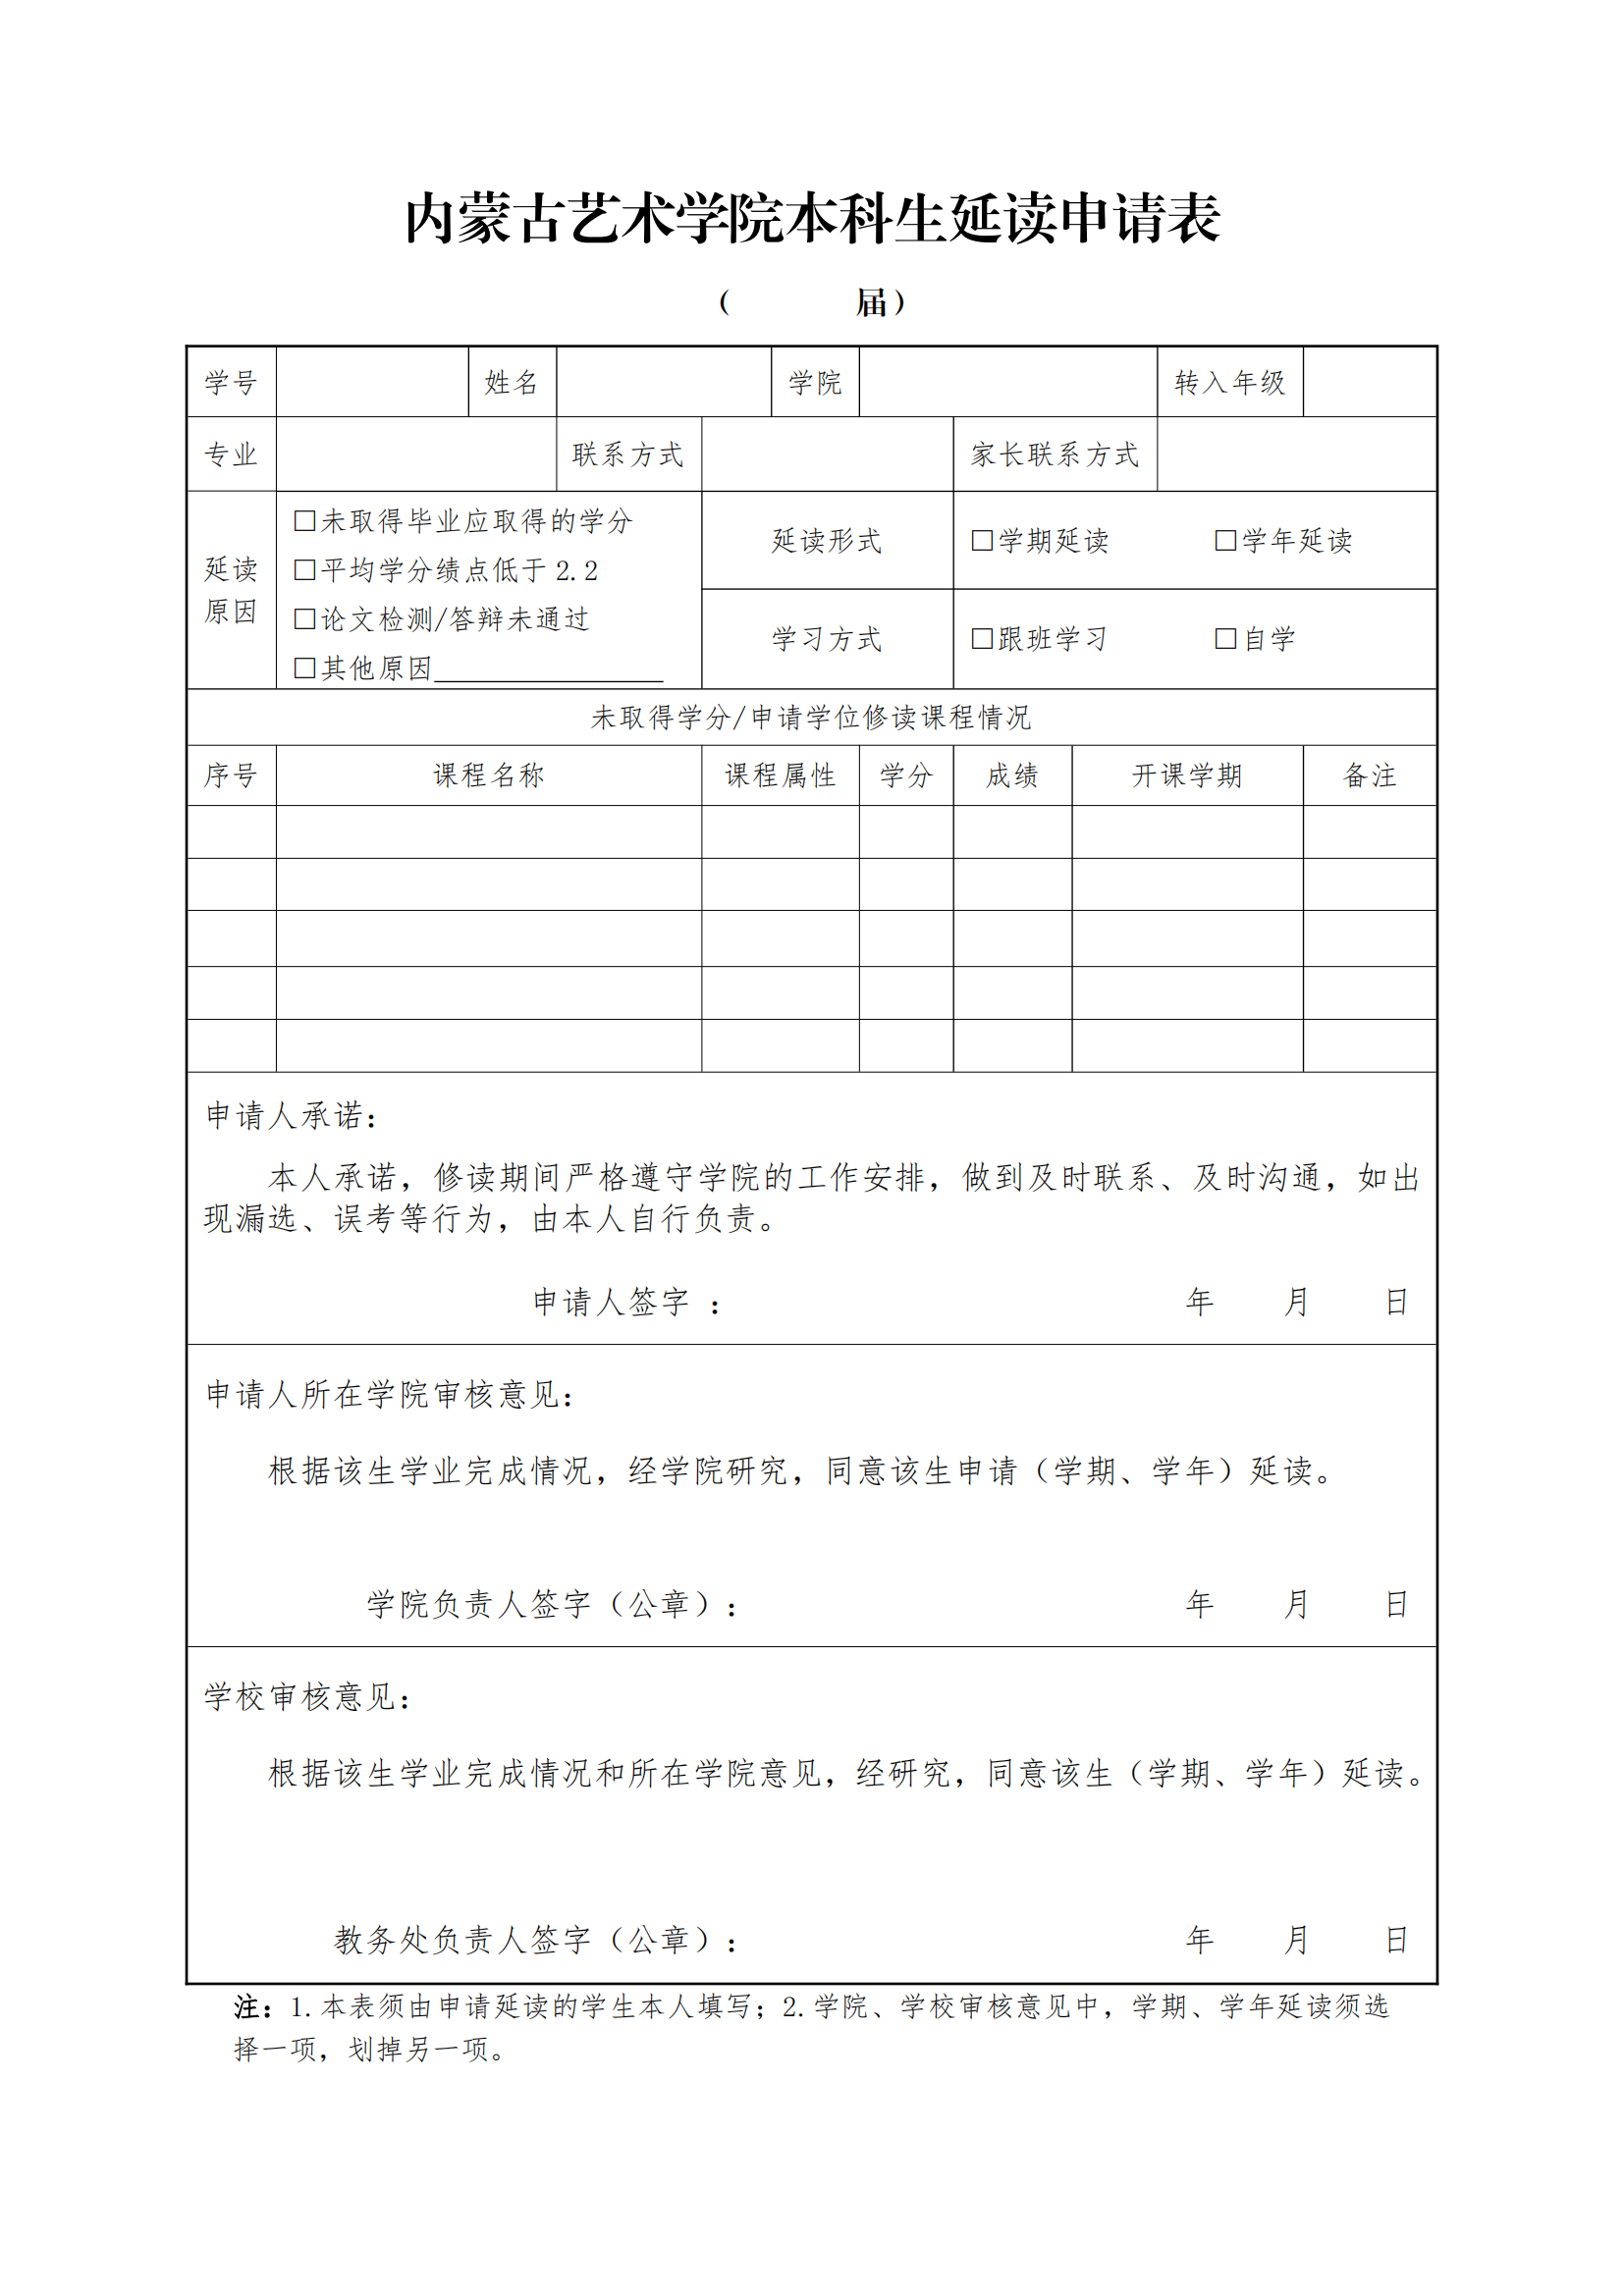 12.延读工作流程与申请表_01.png